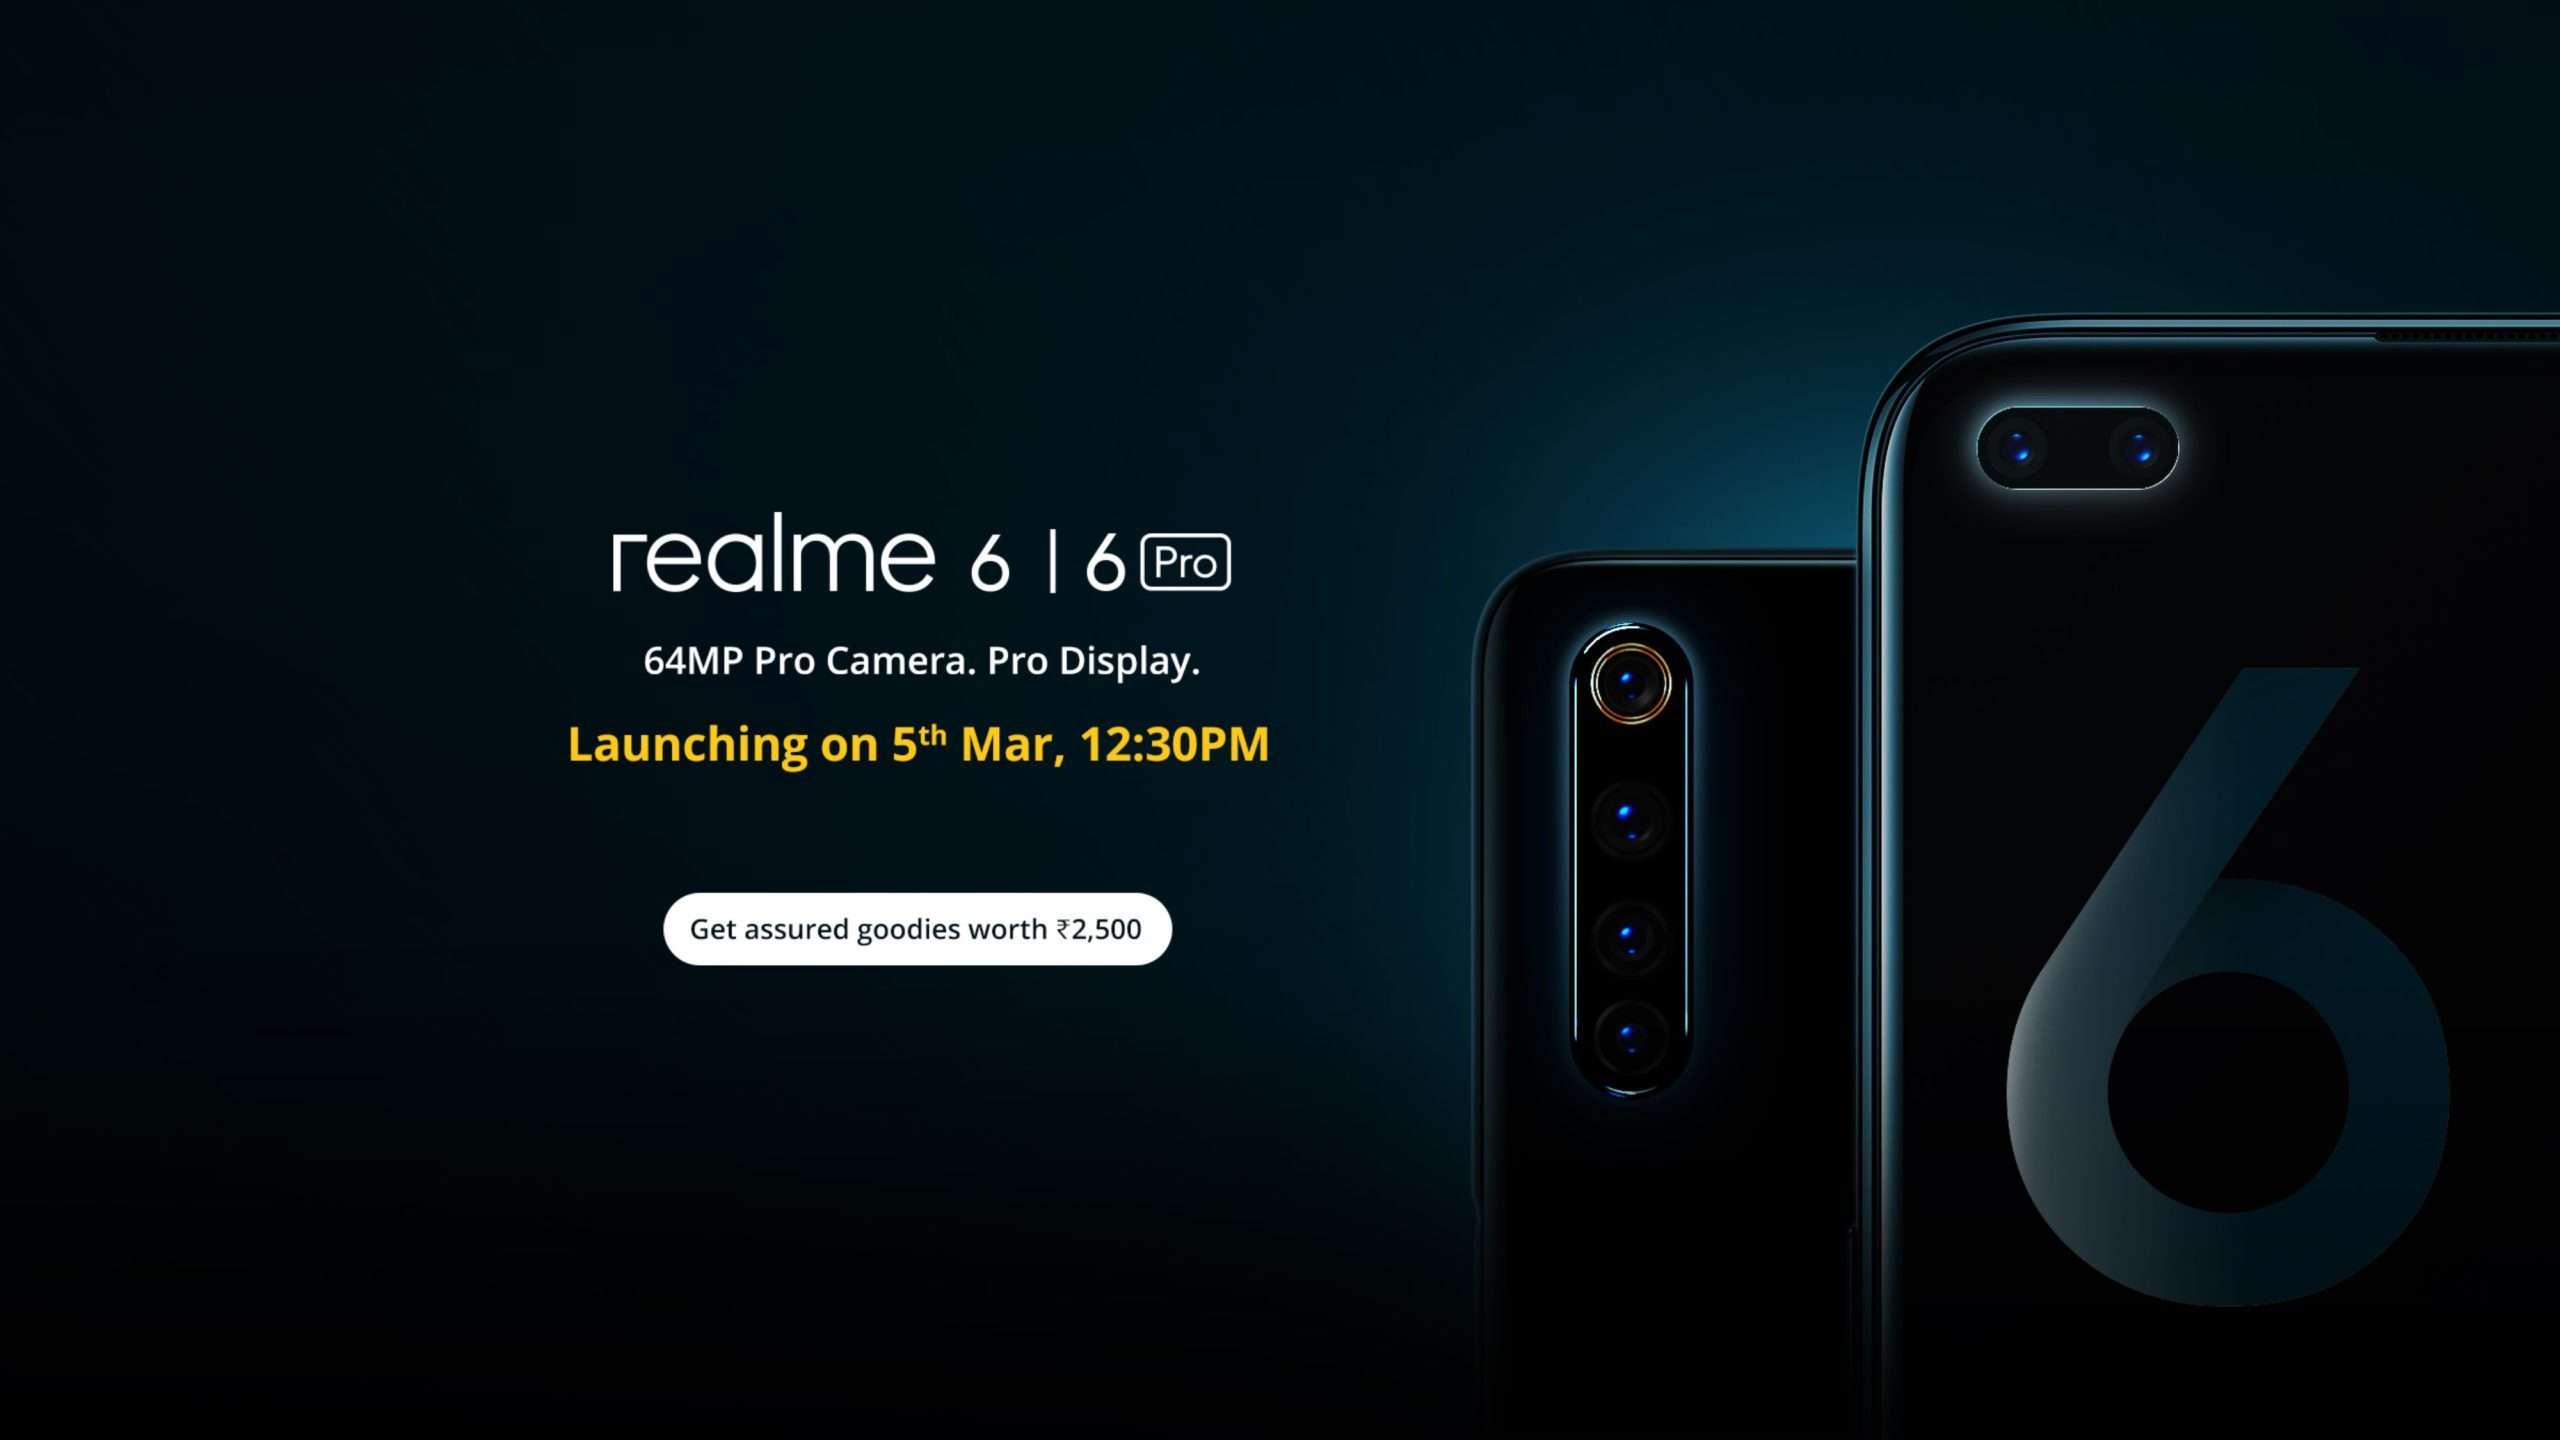 realme and redmi cancels realme 6 and redmi note 9 event